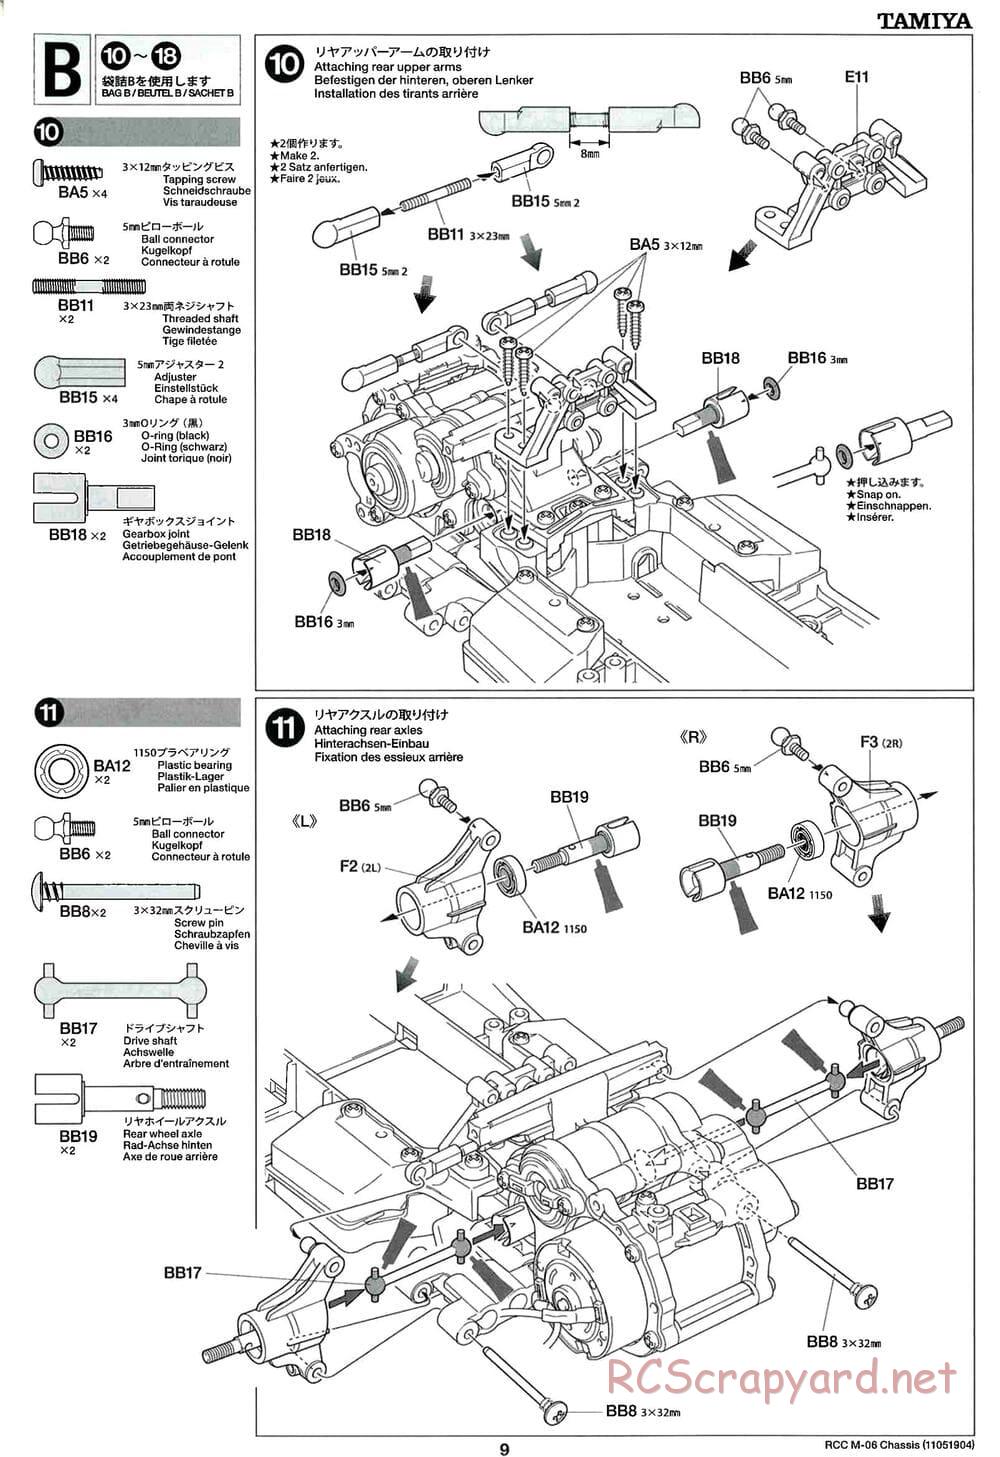 Tamiya - M-06 Chassis - Manual - Page 9